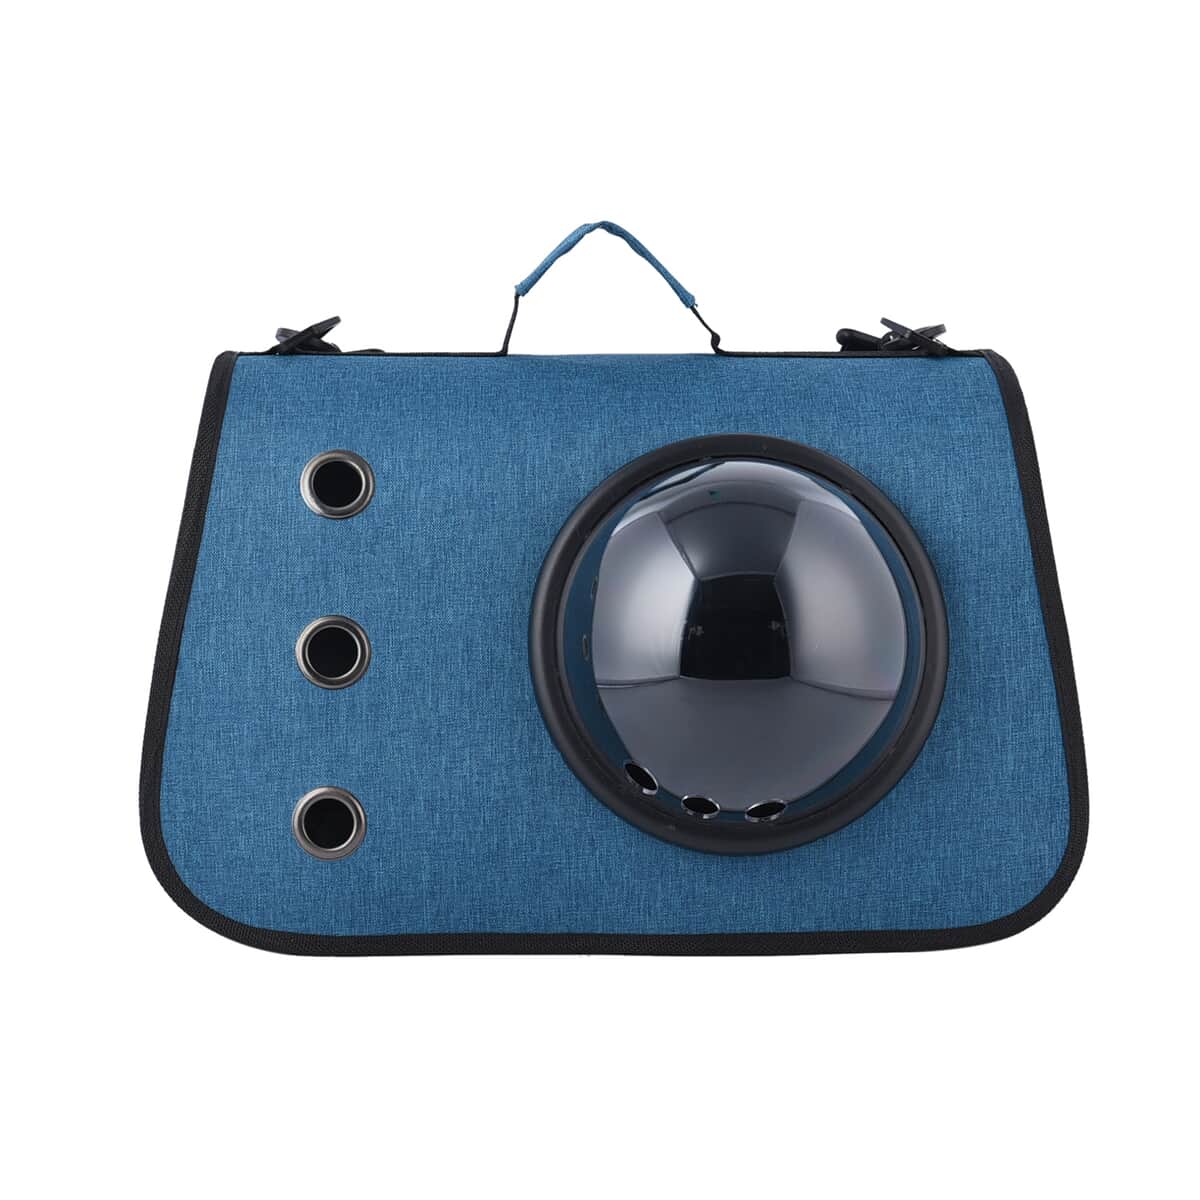 Blue Oxford Fabfric Pet Bag (15.75"x10.24"x11.81") with Adjustable Shoulder Strap image number 0